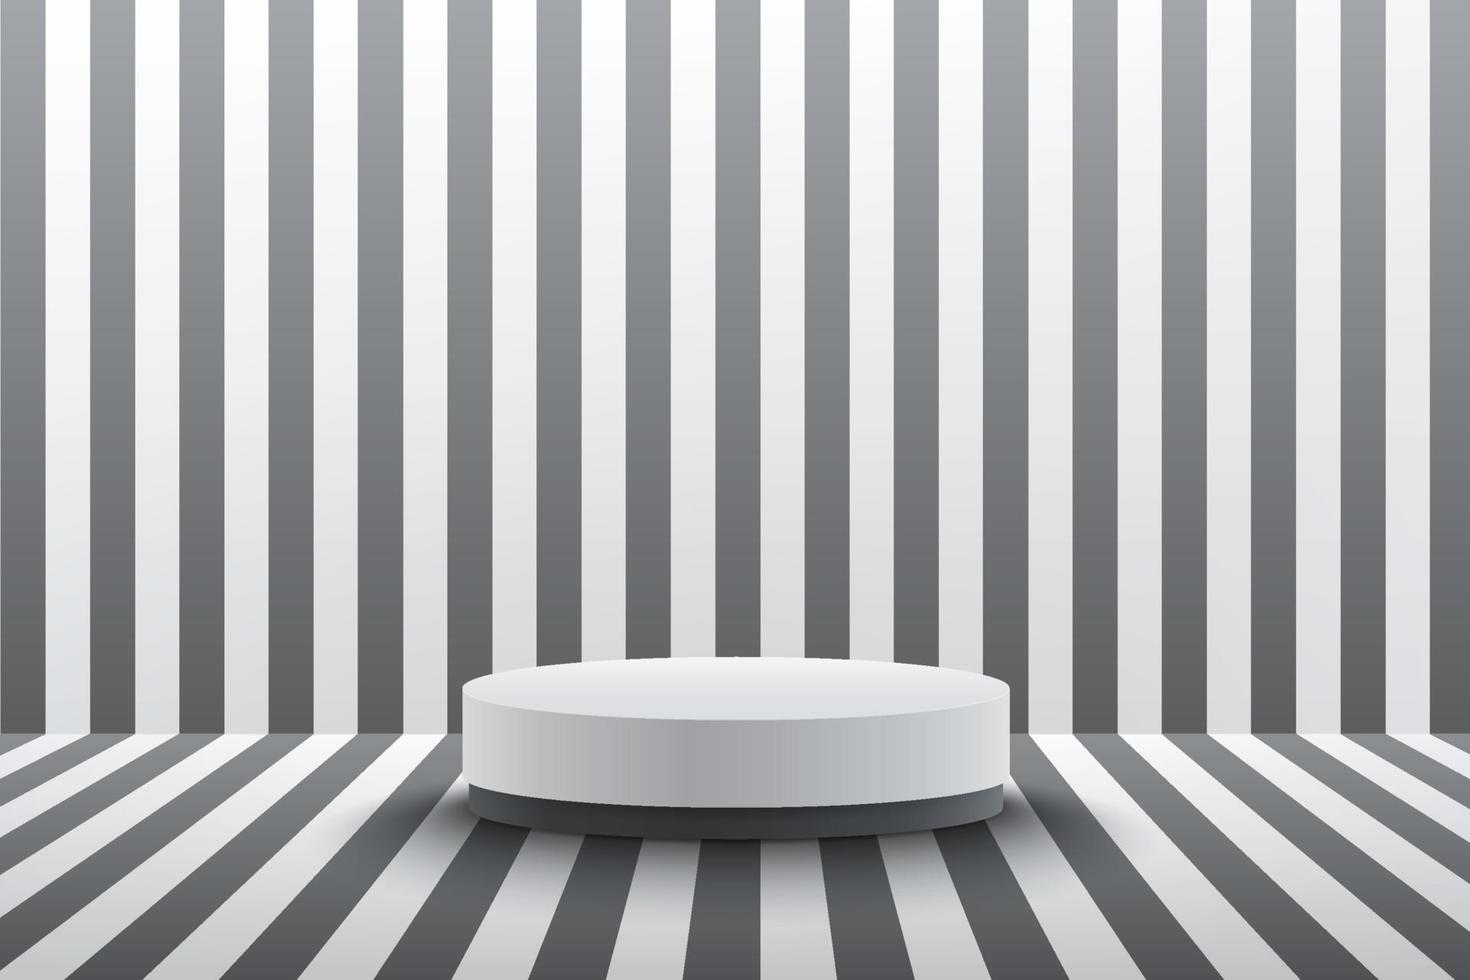 moderno pódio cilindro branco com fundo de sala vazia de perspectiva de listras preto e branco vetor abstrato renderização de forma 3d para exibição de produtos de publicidade. conceito de sala de estúdio de cena mínima.